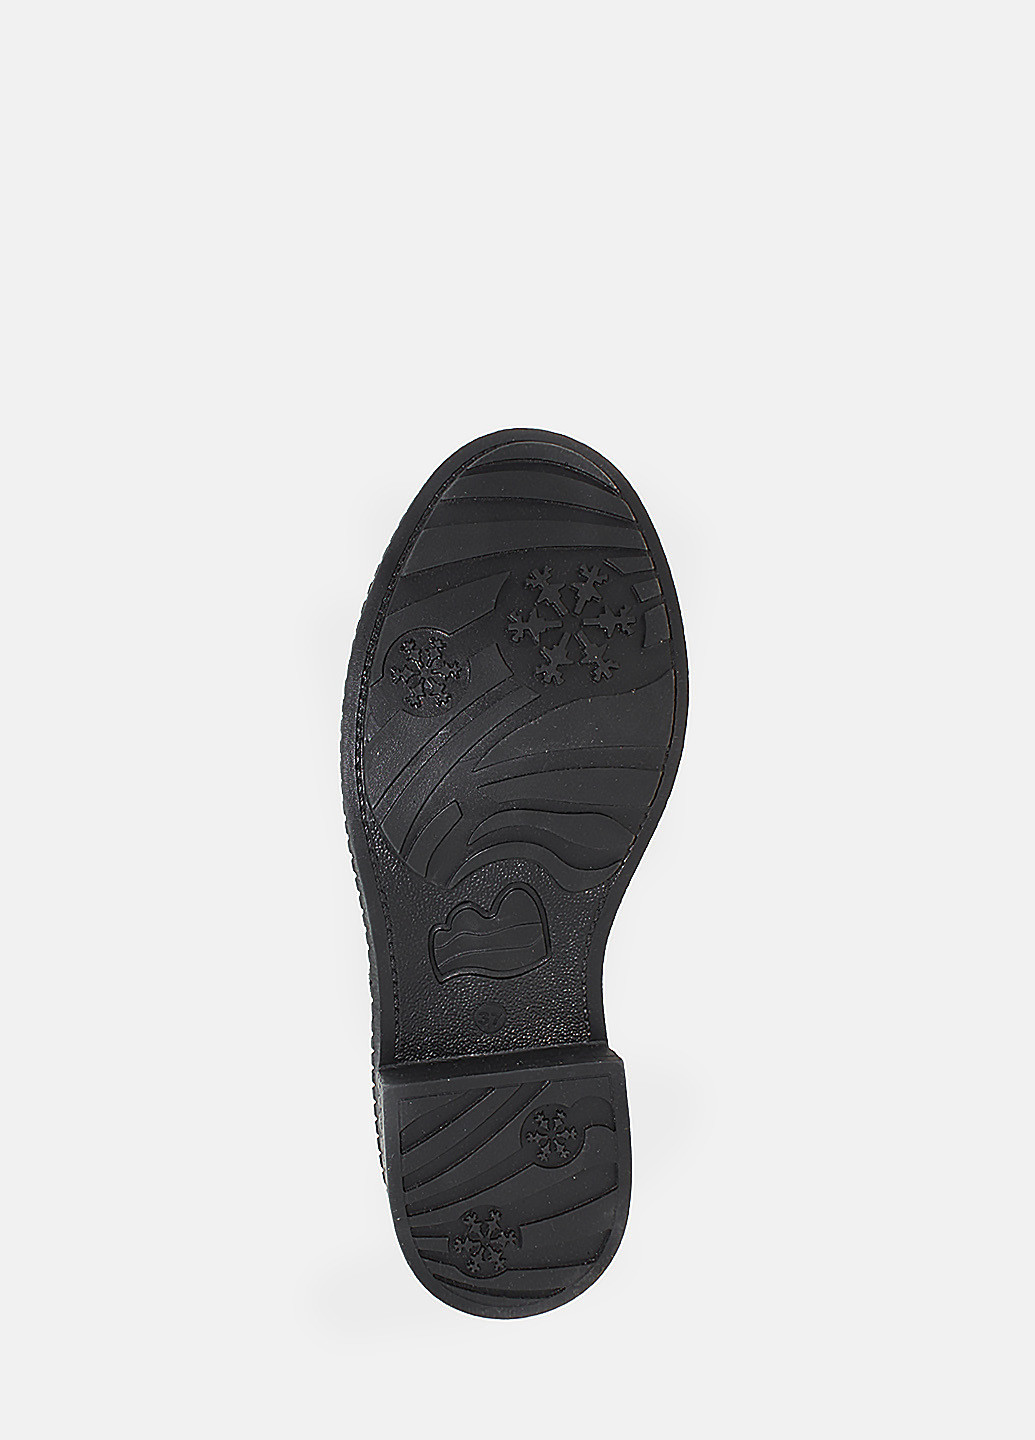 Зимние ботинки rsm8675-11 черный Sothby's из натуральной замши